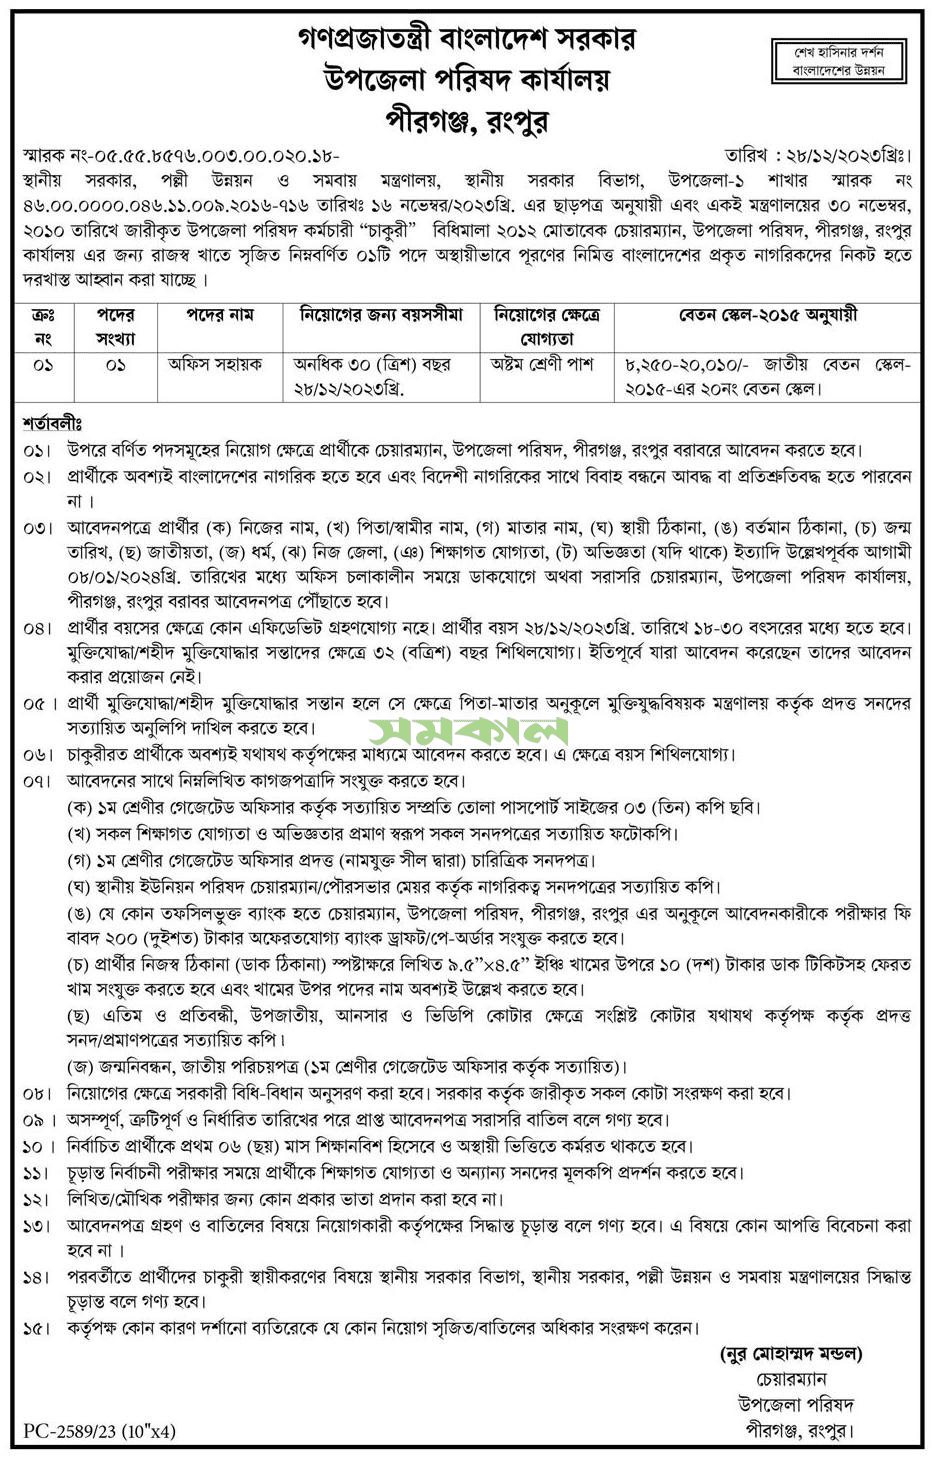 Pirganj, Rangpur Upazila Parishad Job Circular 2024